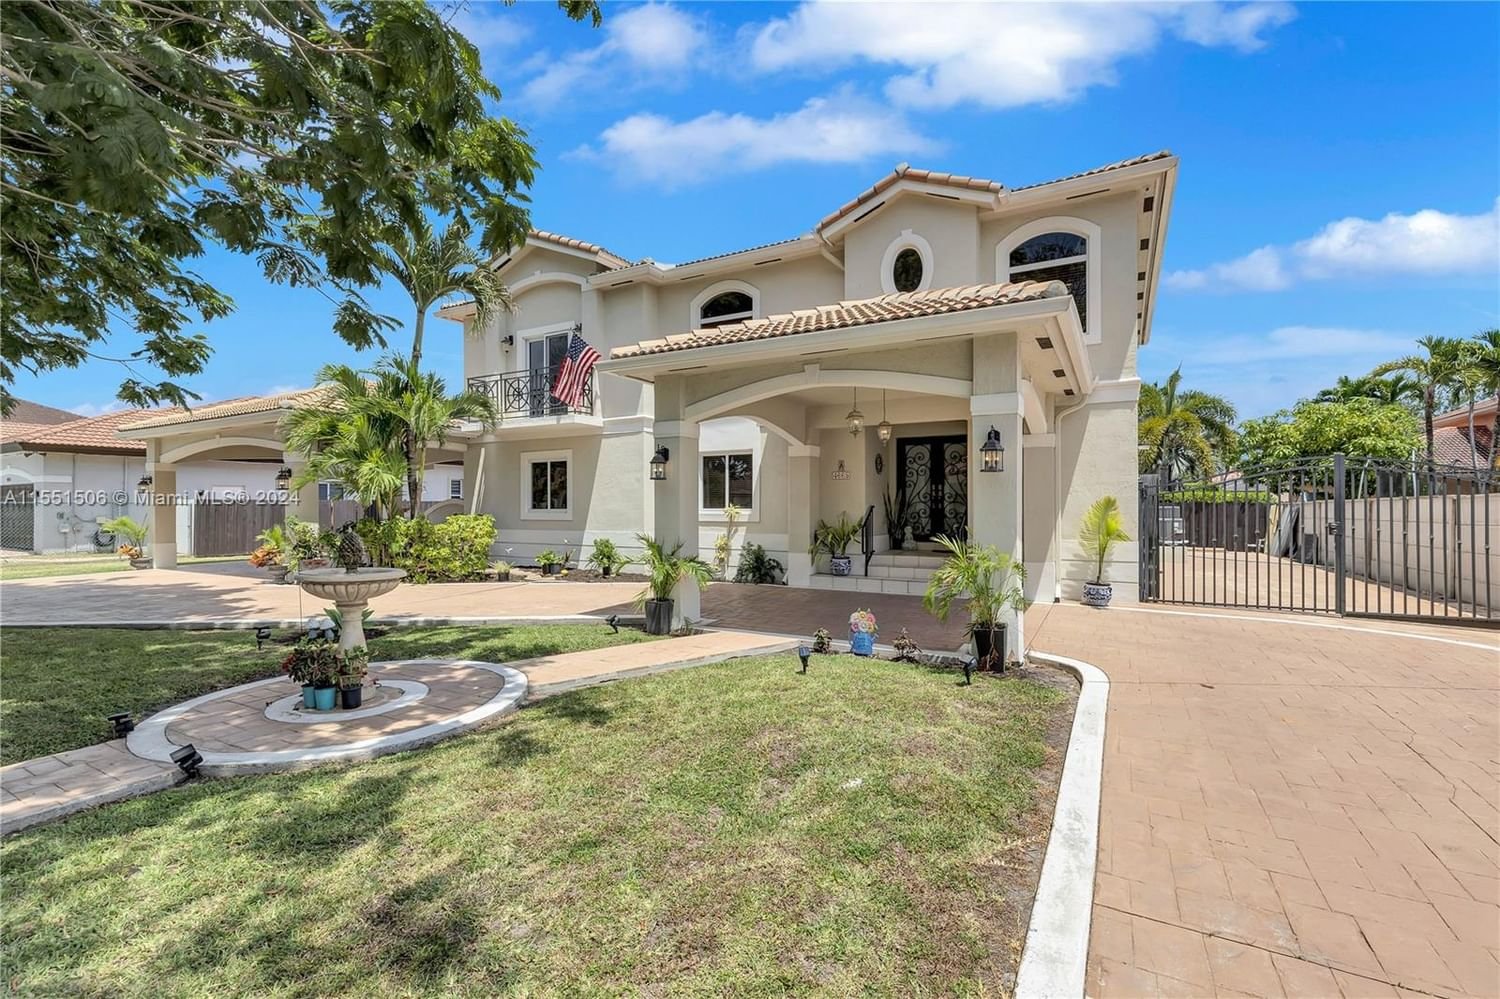 Real estate property located at 4665 159th Ct, Miami-Dade County, BARIMA ESTATES, Miami, FL